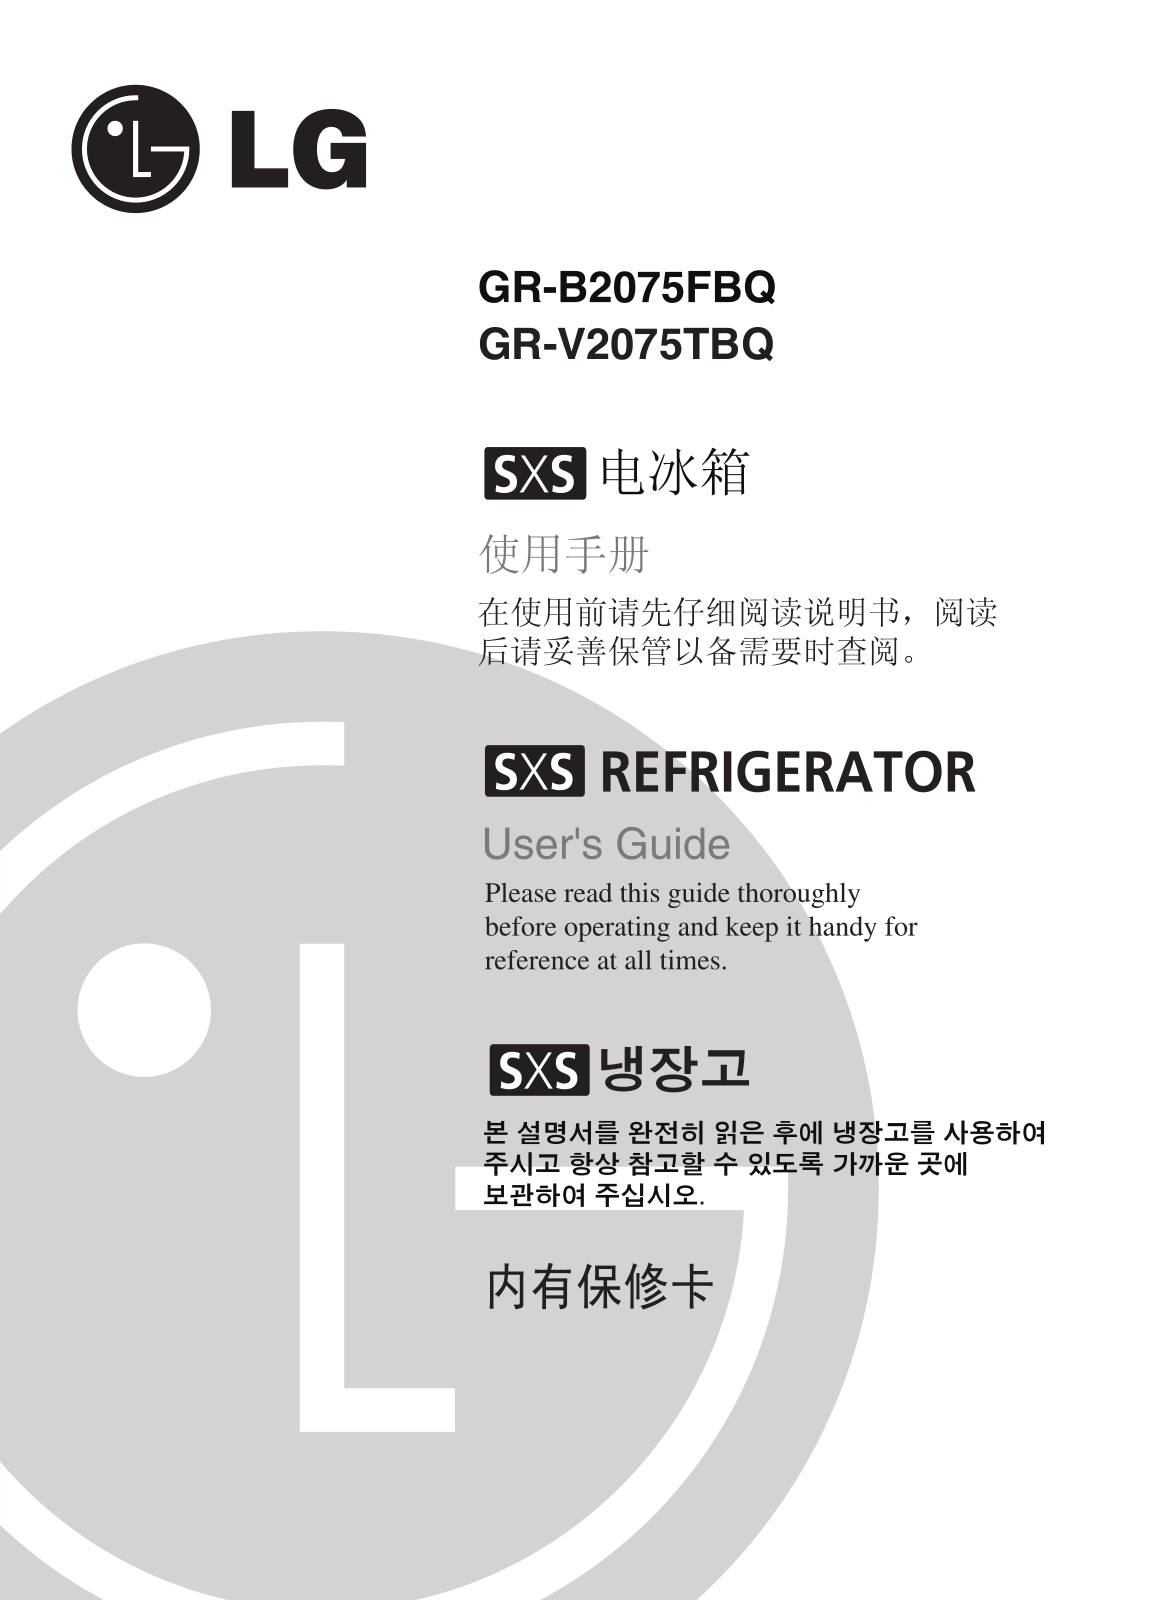 LG GR-B2075FBQ Product Manual